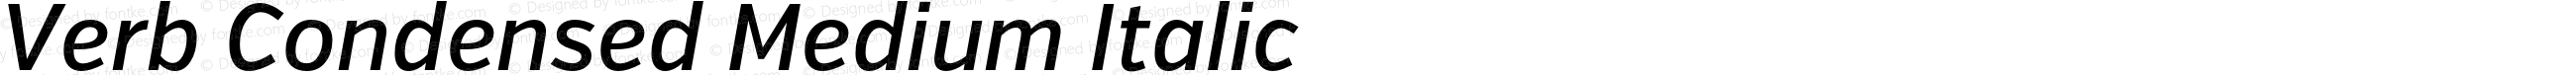 Verb Condensed Medium Italic